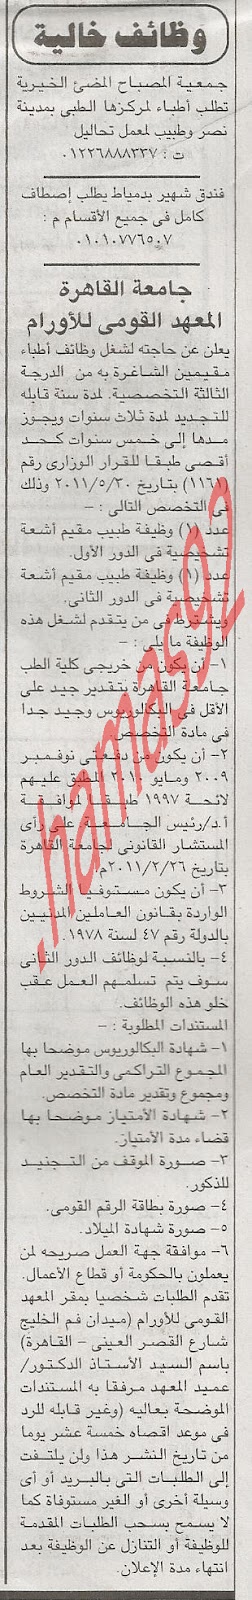 وظائف جامعة القاهرة - تطلب اطباء تخصصات مختلفة للتعين - 28 يونيو 2012 %D8%A7%D9%84%D8%AC%D9%85%D9%87%D9%88%D8%B1%D9%8A%D8%A9+3